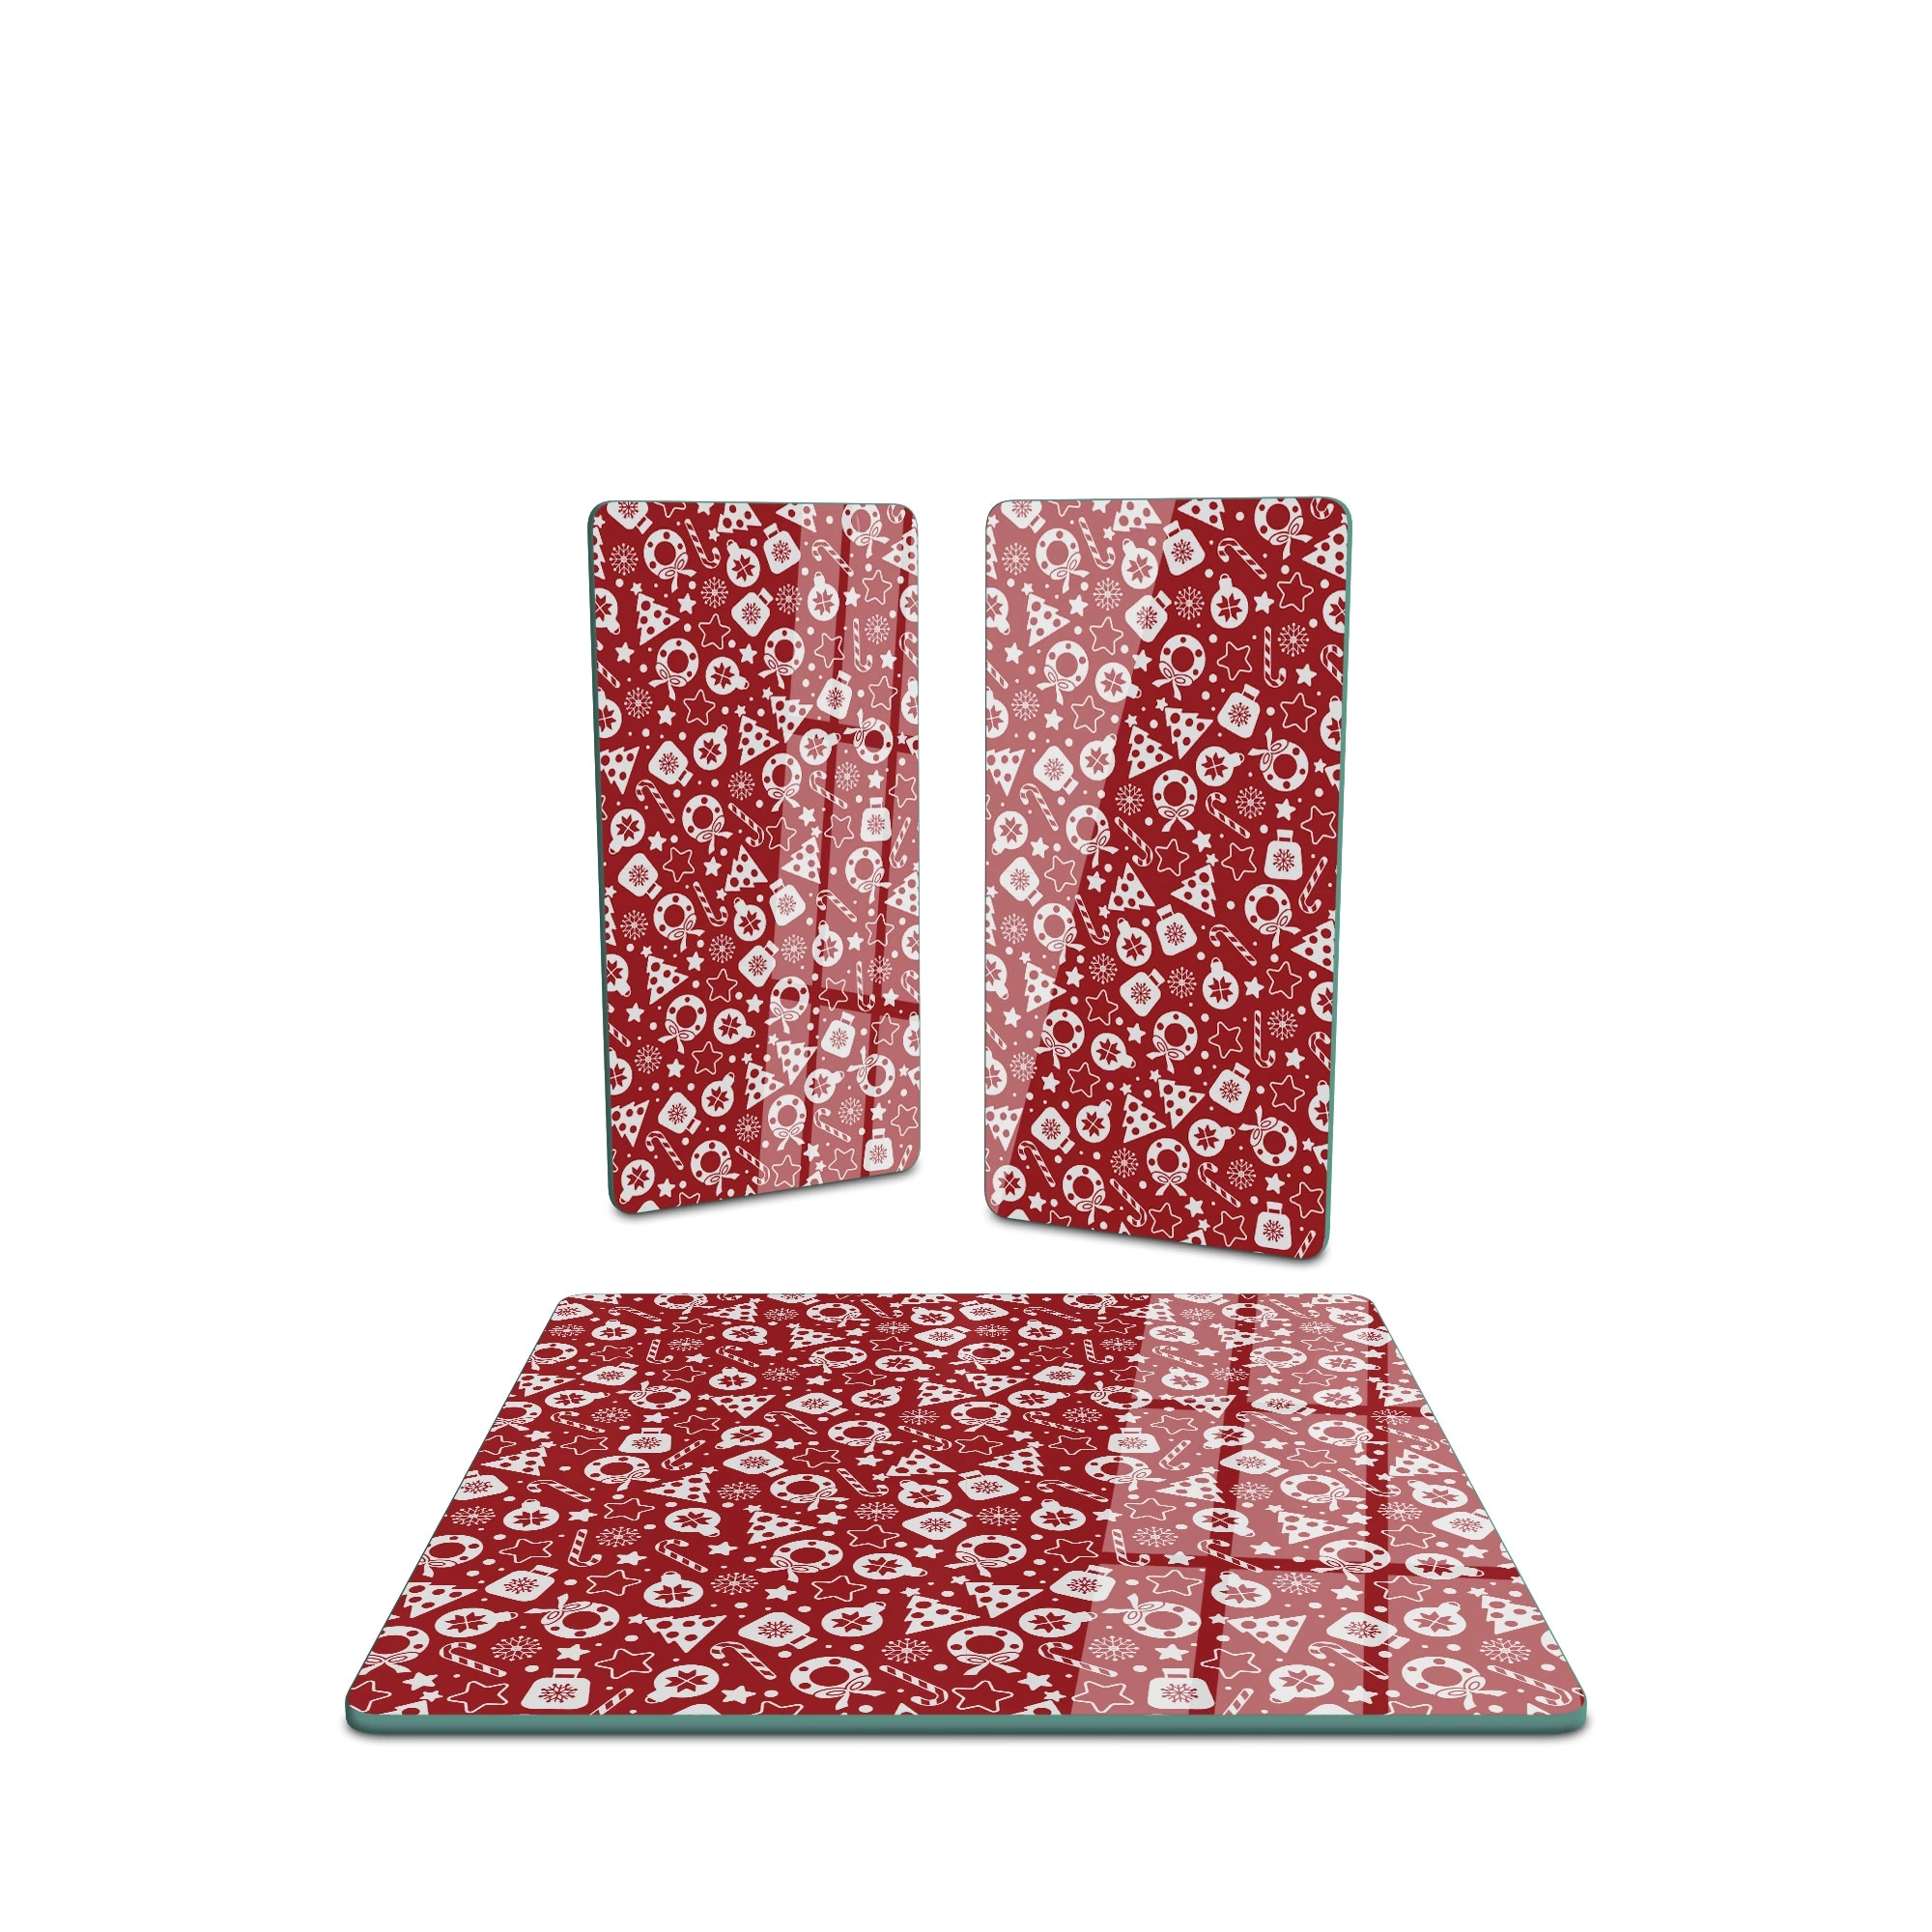 Decovetro Cam Sunum Servis Tabağı 3lü Kare Set Kırmızı Yılbaşı Desenli